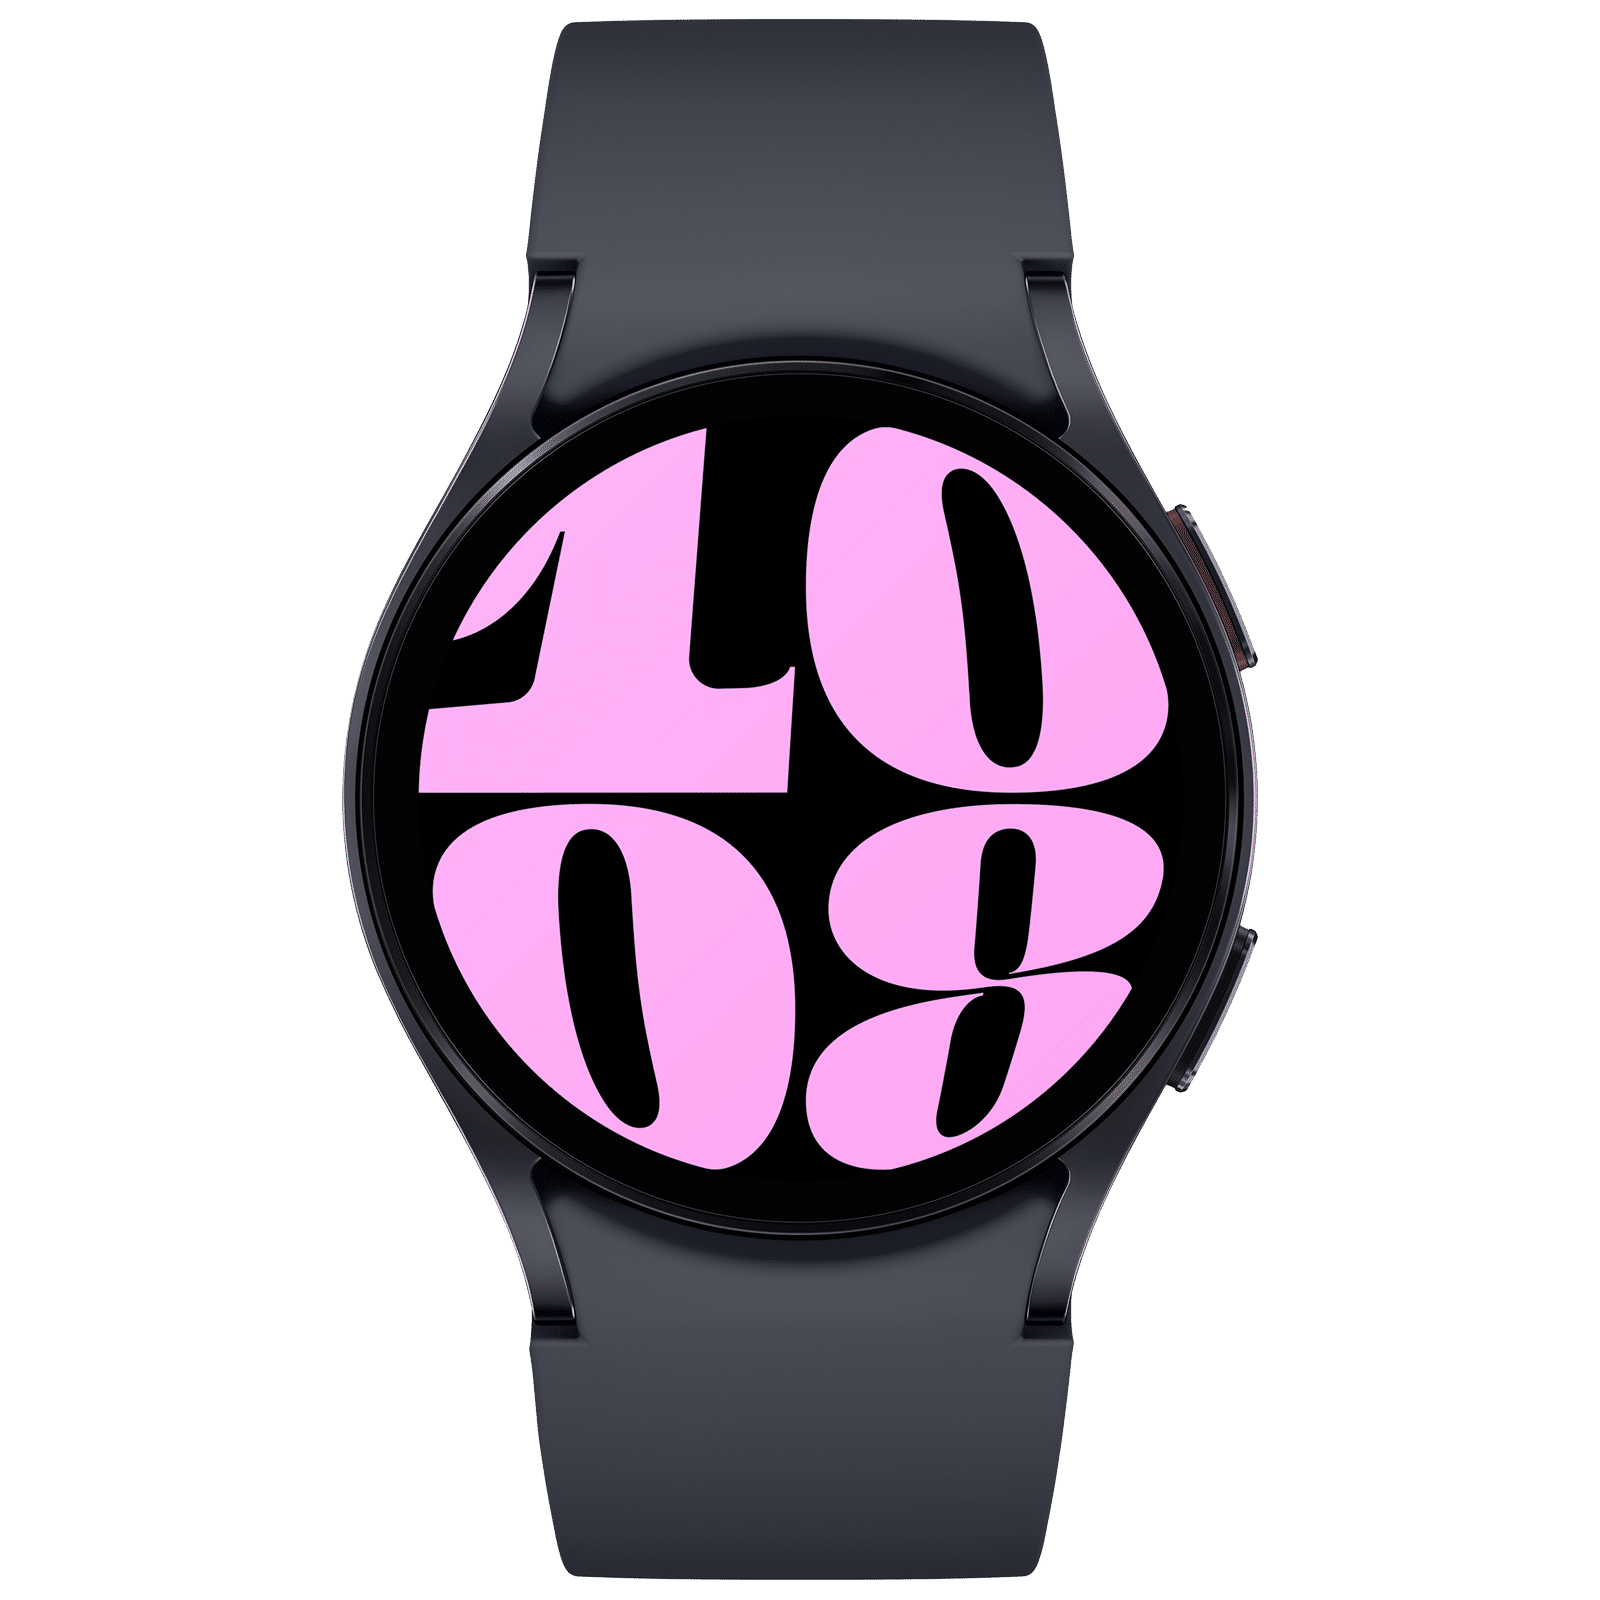 OsRpE Super Watch GT08 Smartwatch Price in India - Buy OsRpE Super Watch  GT08 Smartwatch online at Flipkart.com